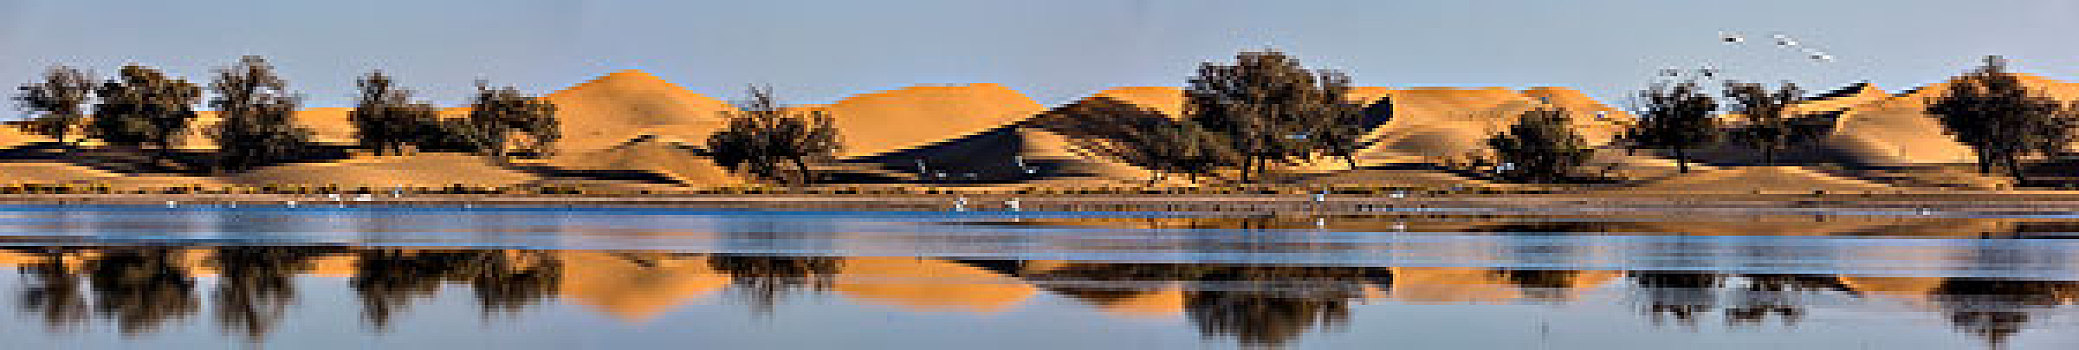 沙漠天鹅全景图